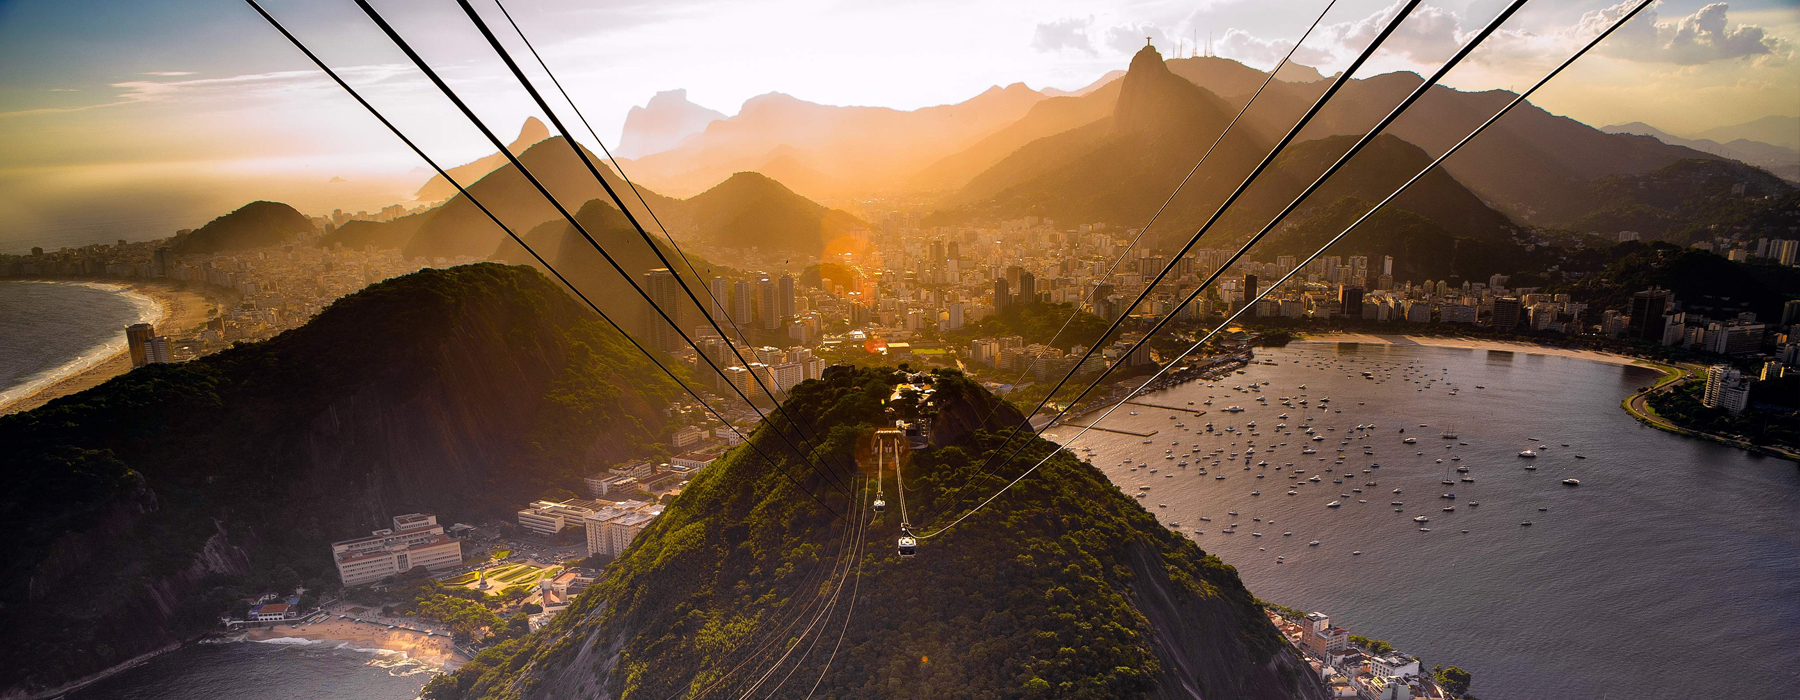 Sugar Loaf Sunset, Rio de Janeiro, Brazil - Atelier South America